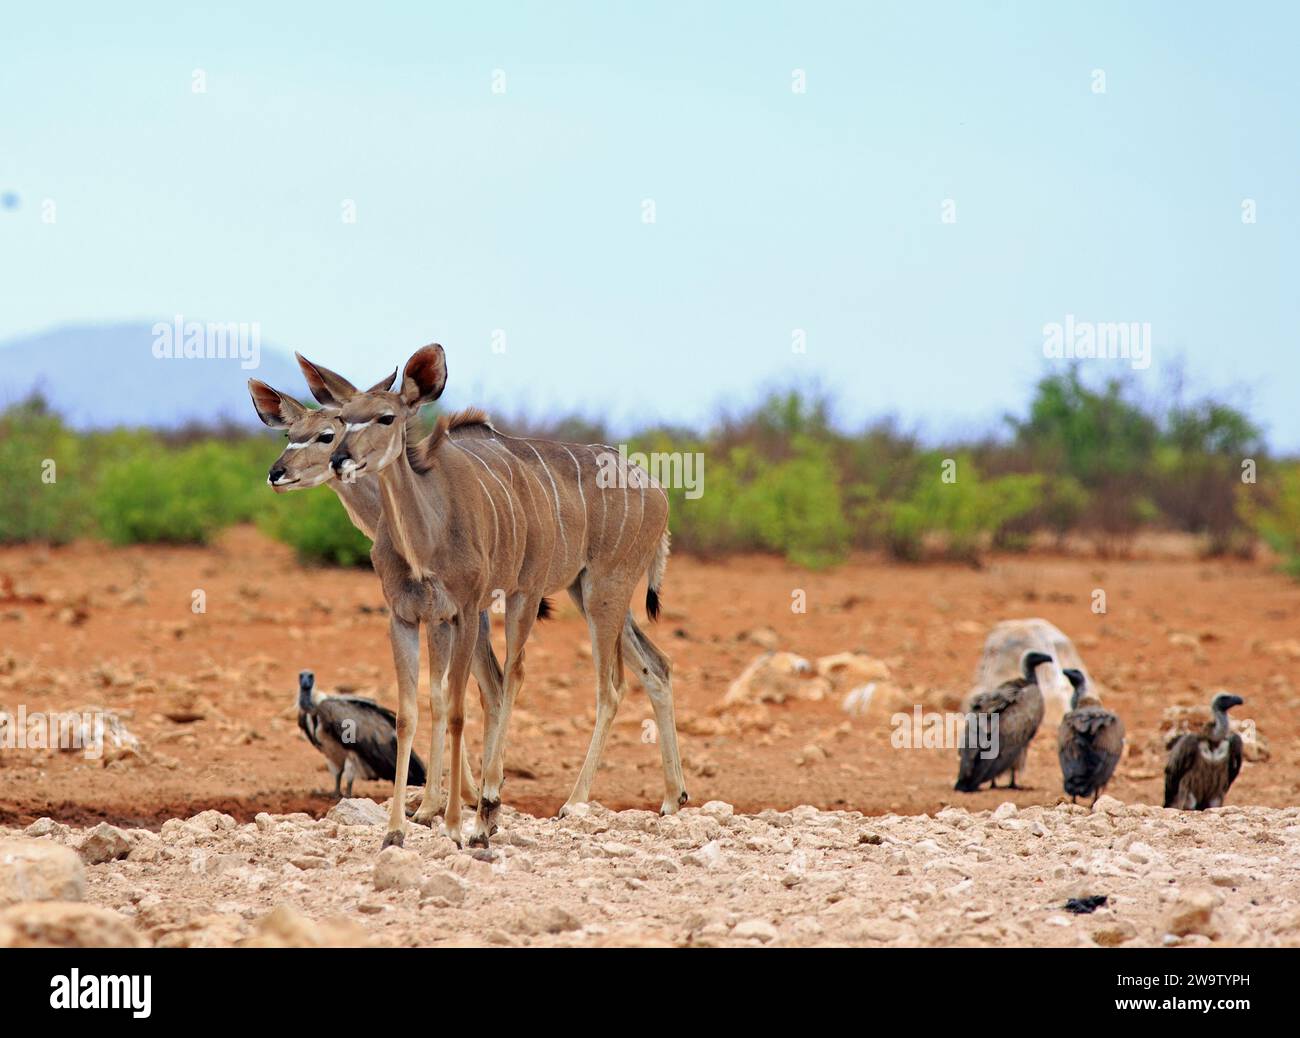 Zwei weibliche Kudu, die auf der trockenen afrikanischen Savanne stehen, mit Geiern im Hinterland, die auf dem Boden ruhen Stockfoto